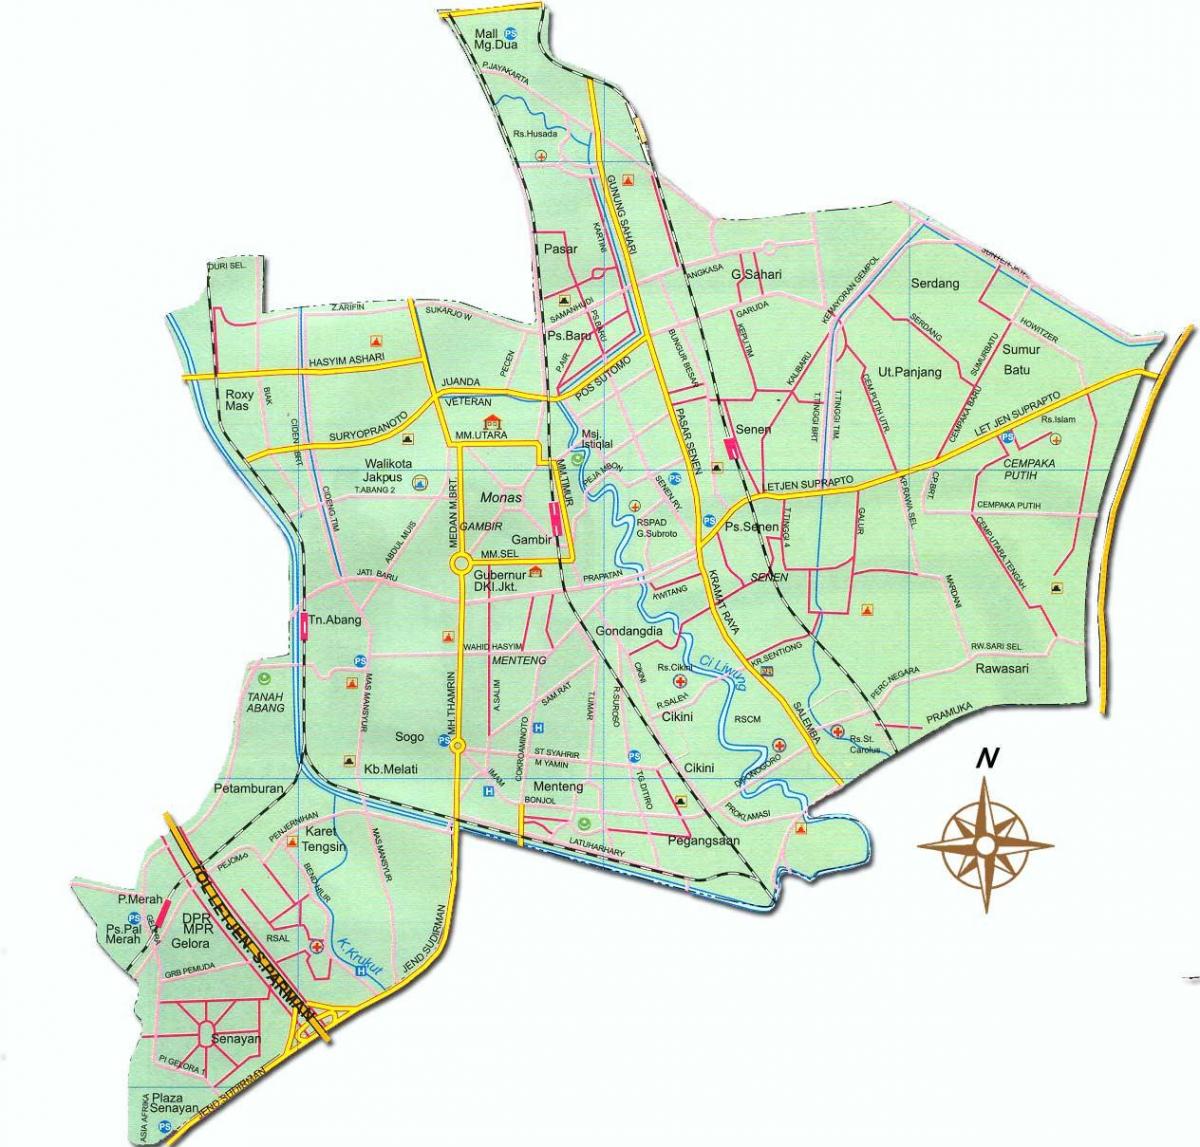 χάρτης του Jakarta pusat